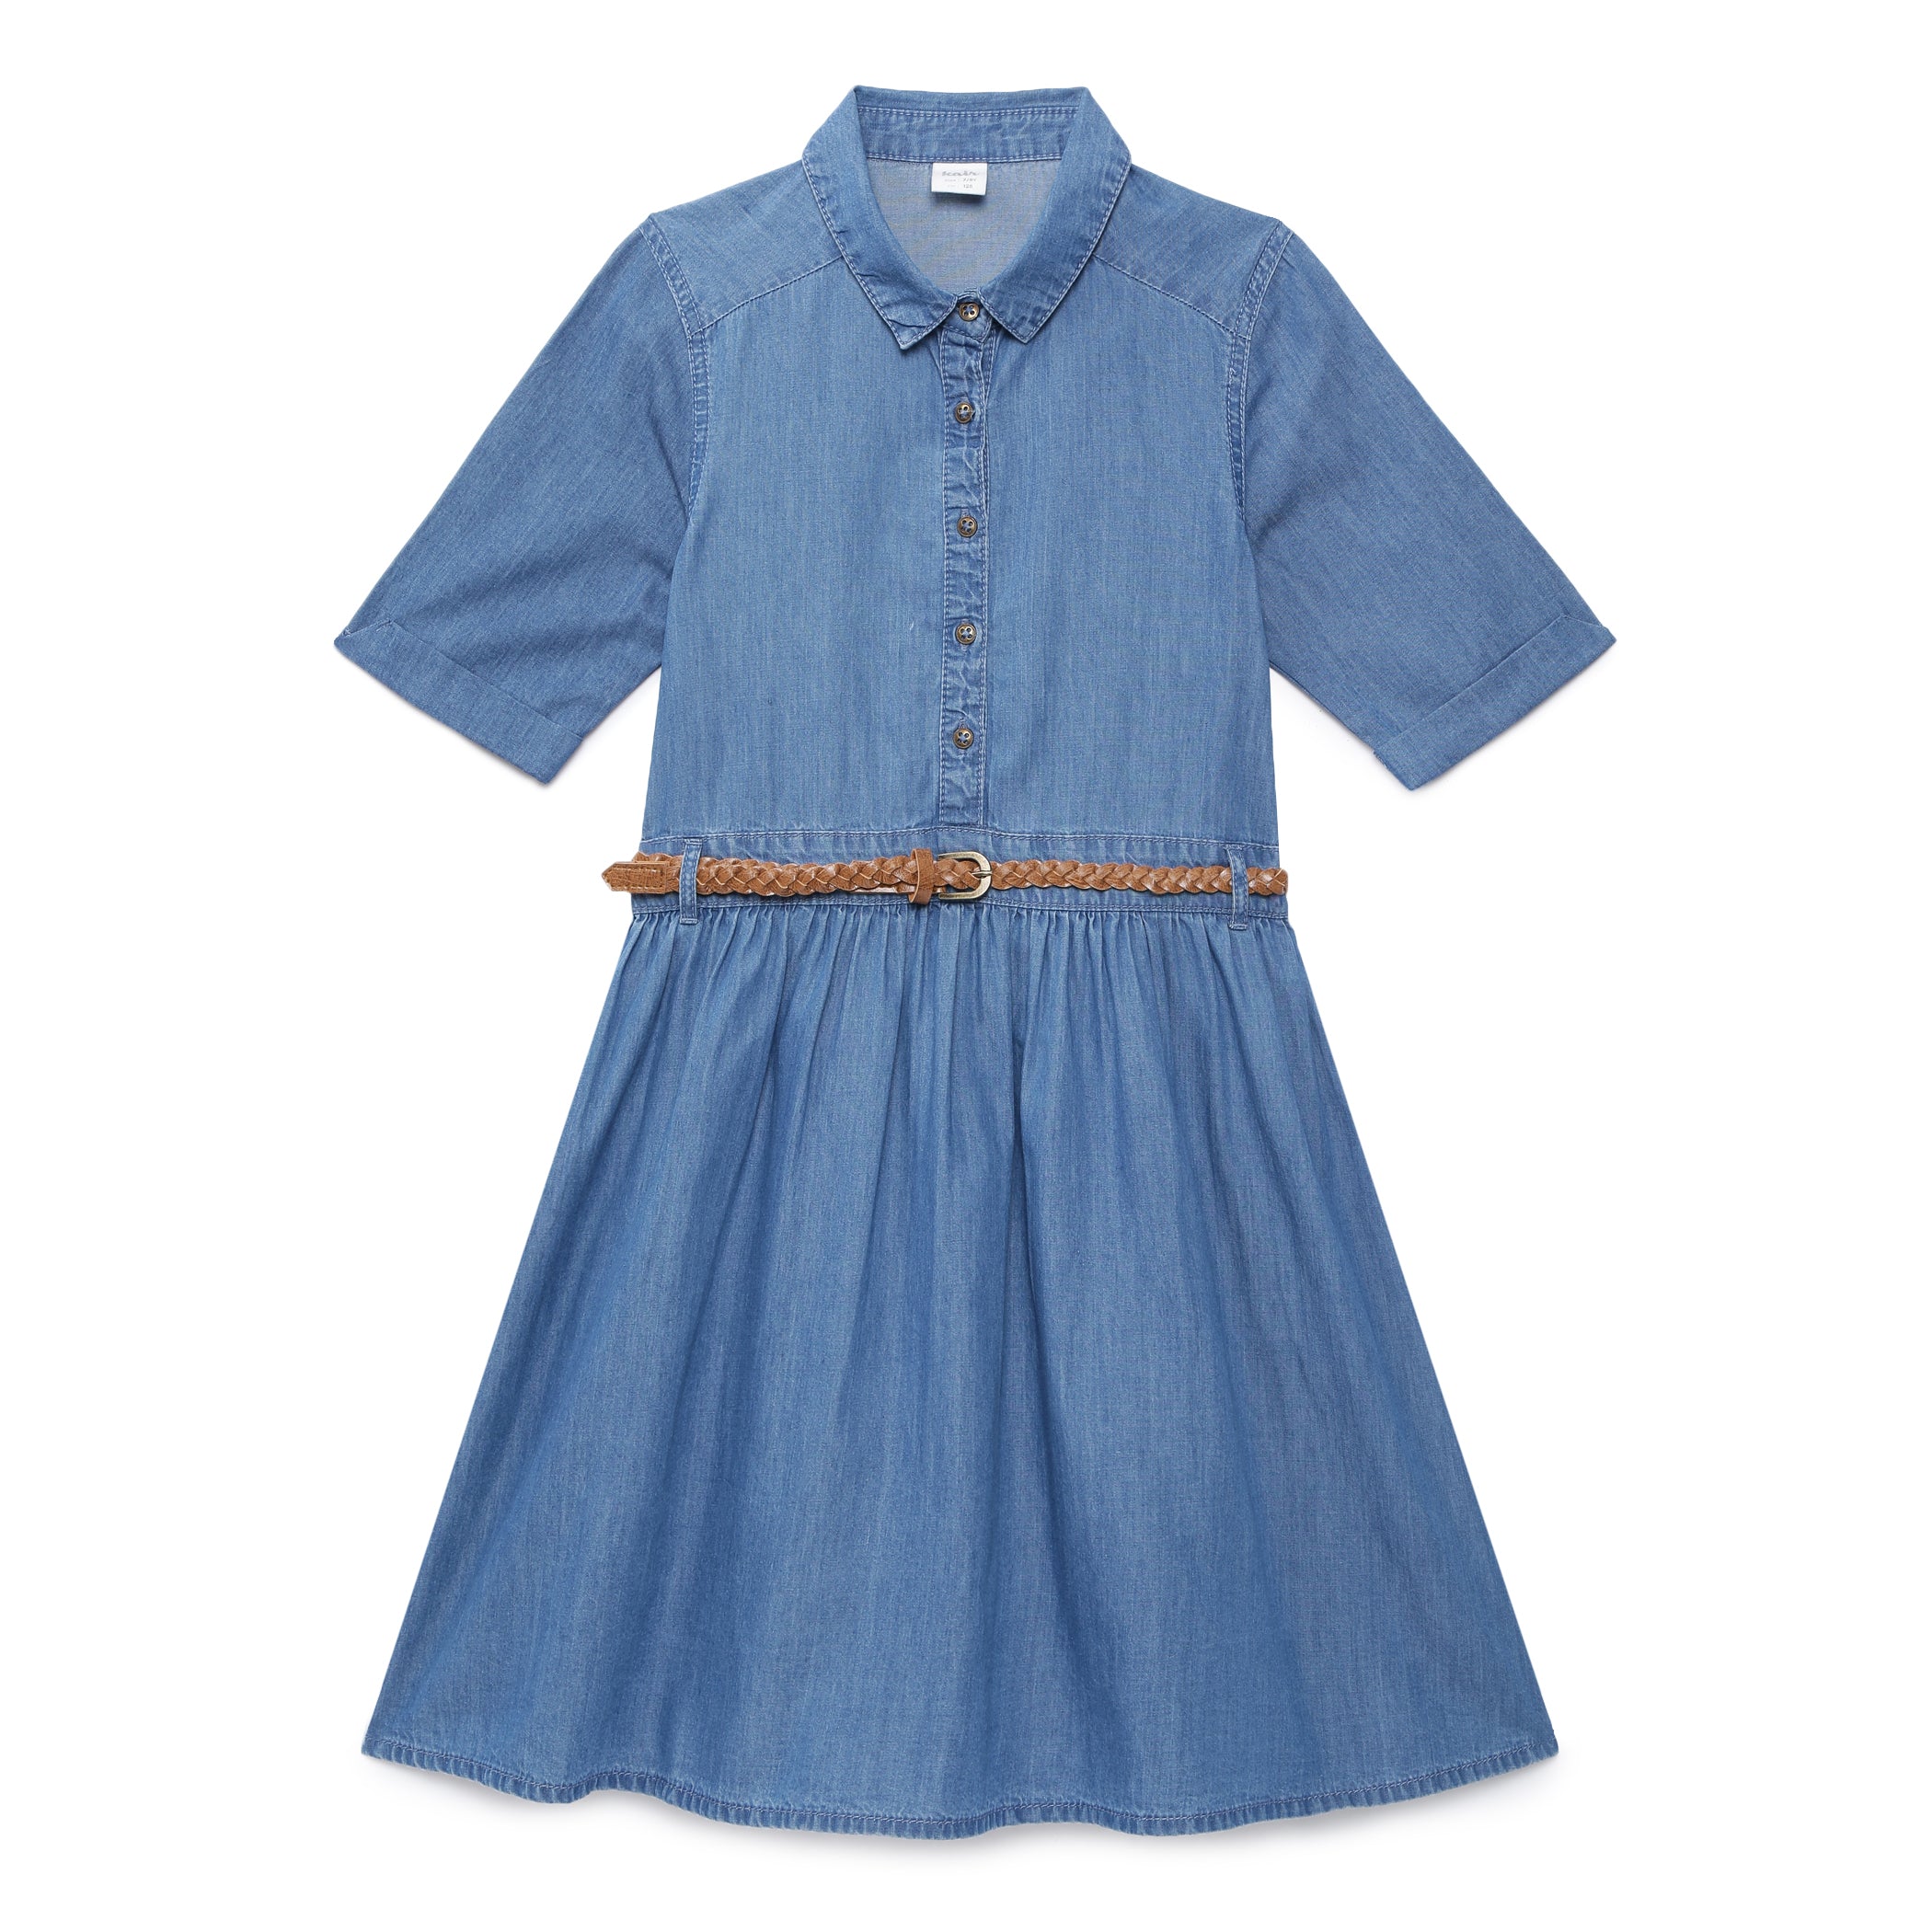 Button-front denim dress - Light denim blue - Ladies | H&M IN